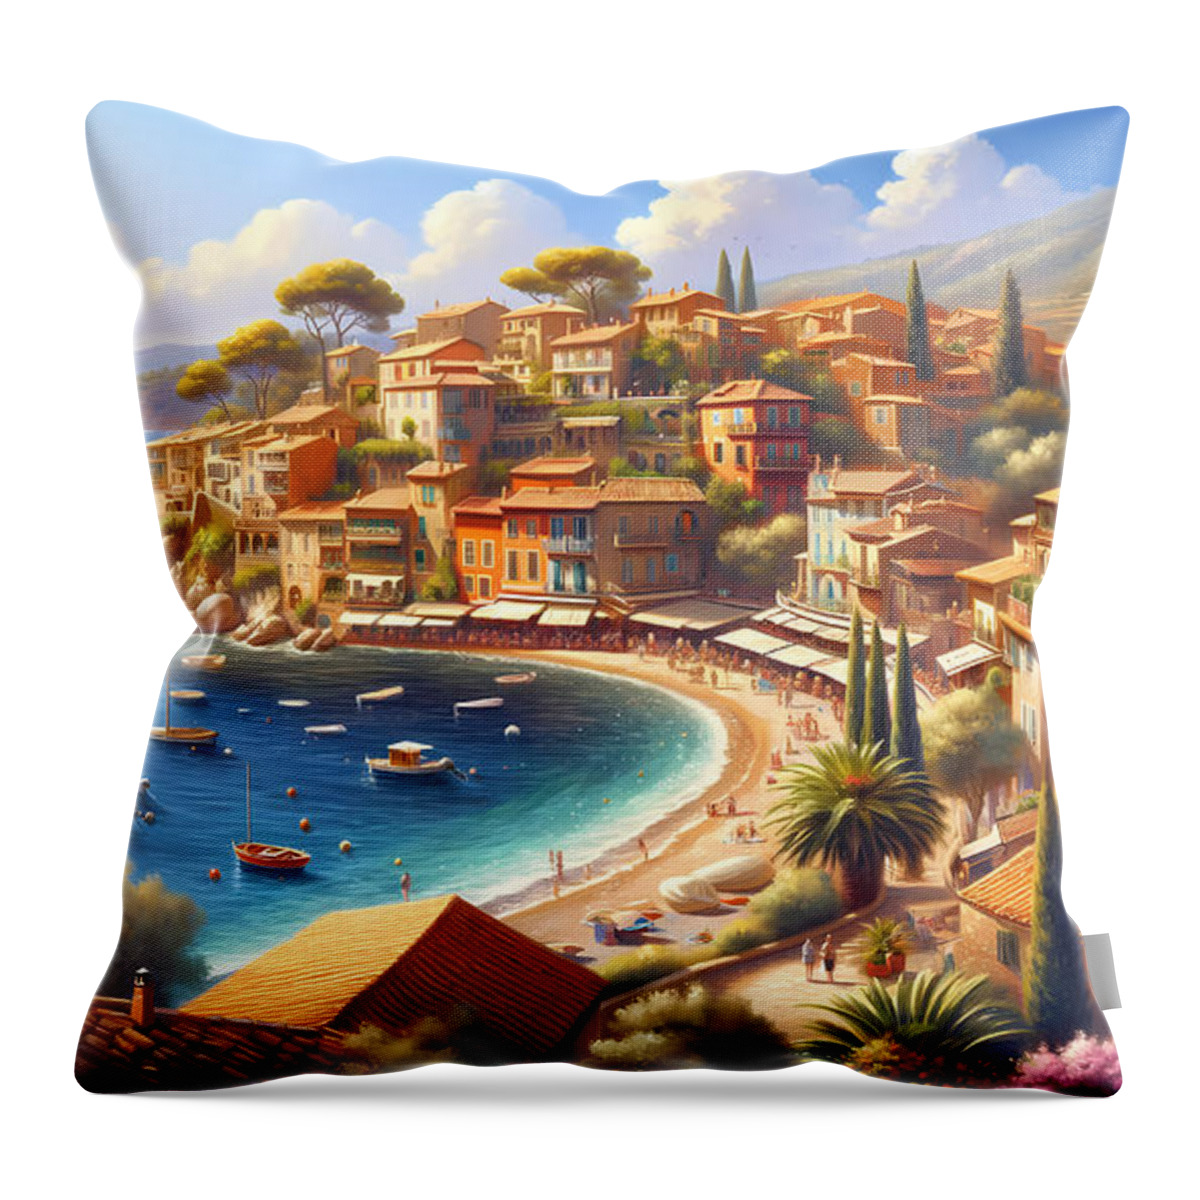 Mediterranean Throw Pillow featuring the digital art Mediterranean Seaside Town, A charming seaside town on the Mediterranean coast by Jeff Creation